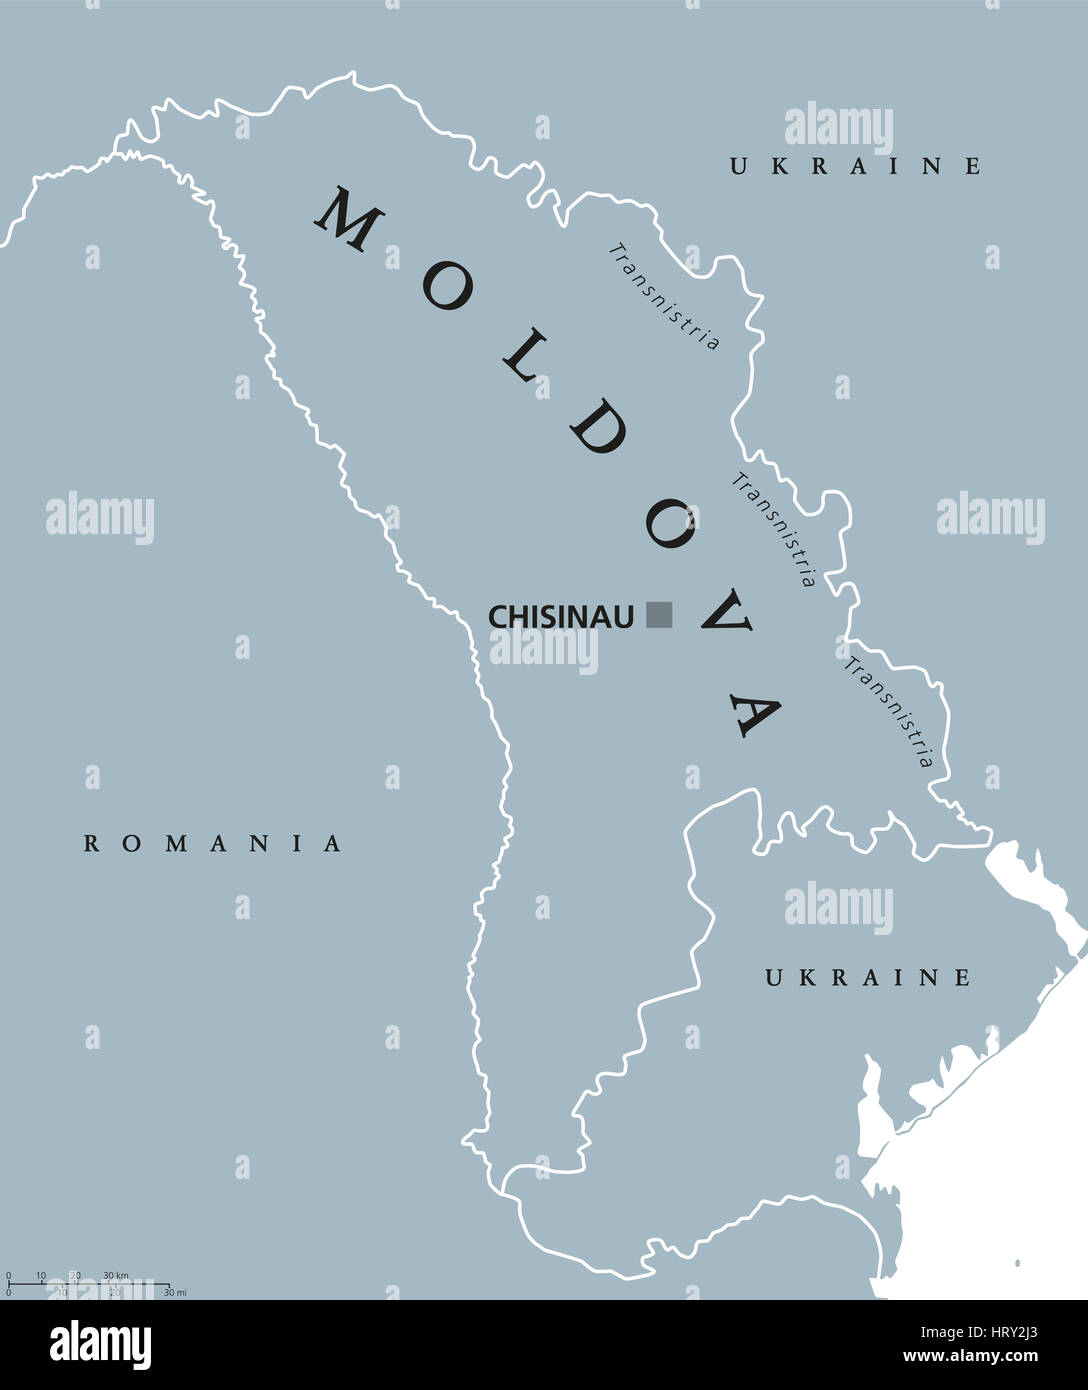 Moldova mapa político con capital, Chisinau, Transnistria, las fronteras nacionales y vecinos. También Moldavia, República sin litoral en Europa oriental. Foto de stock